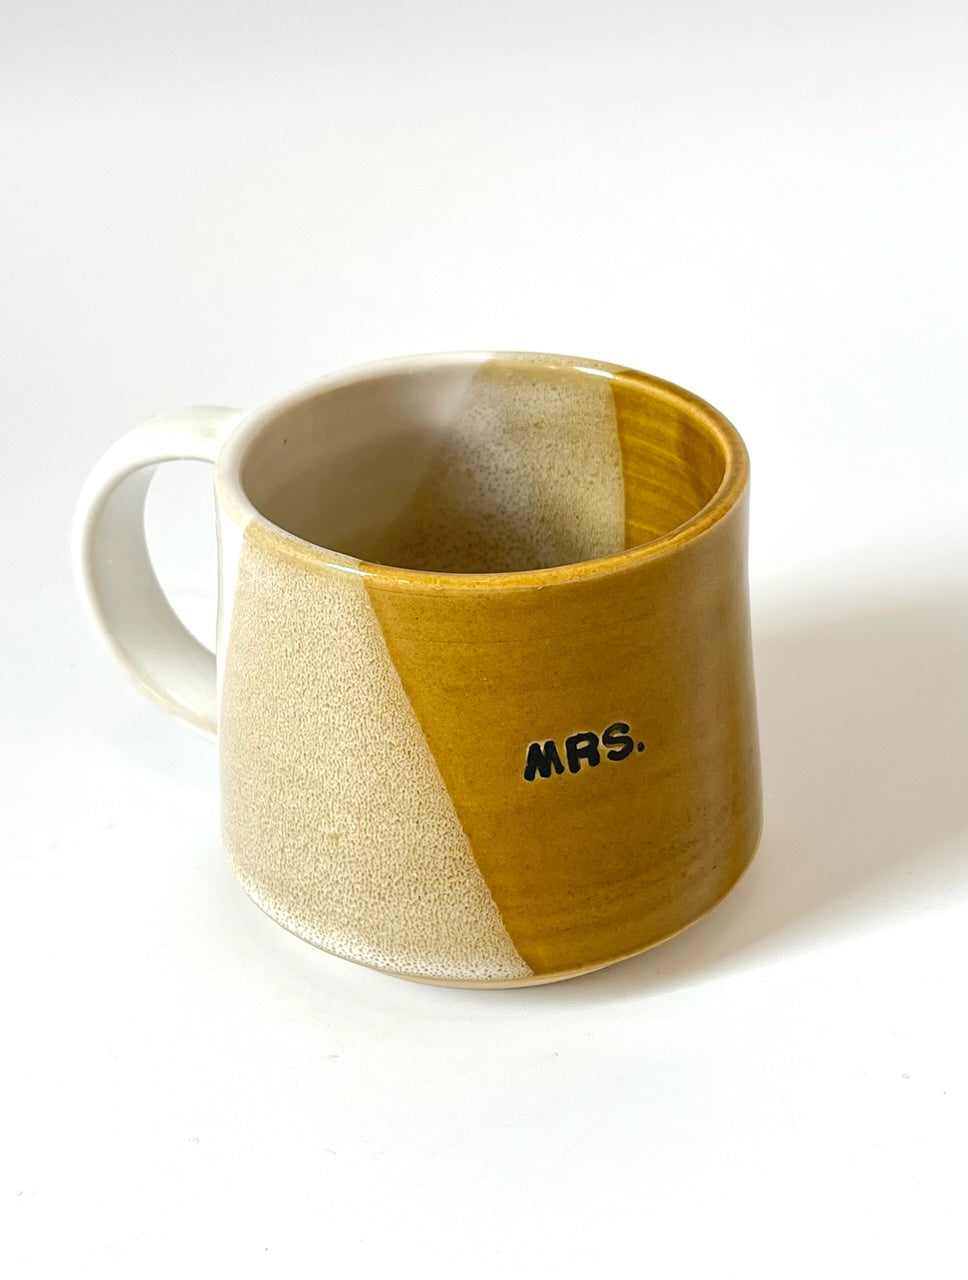 Ceramic "Mrs." Mug - Ochre